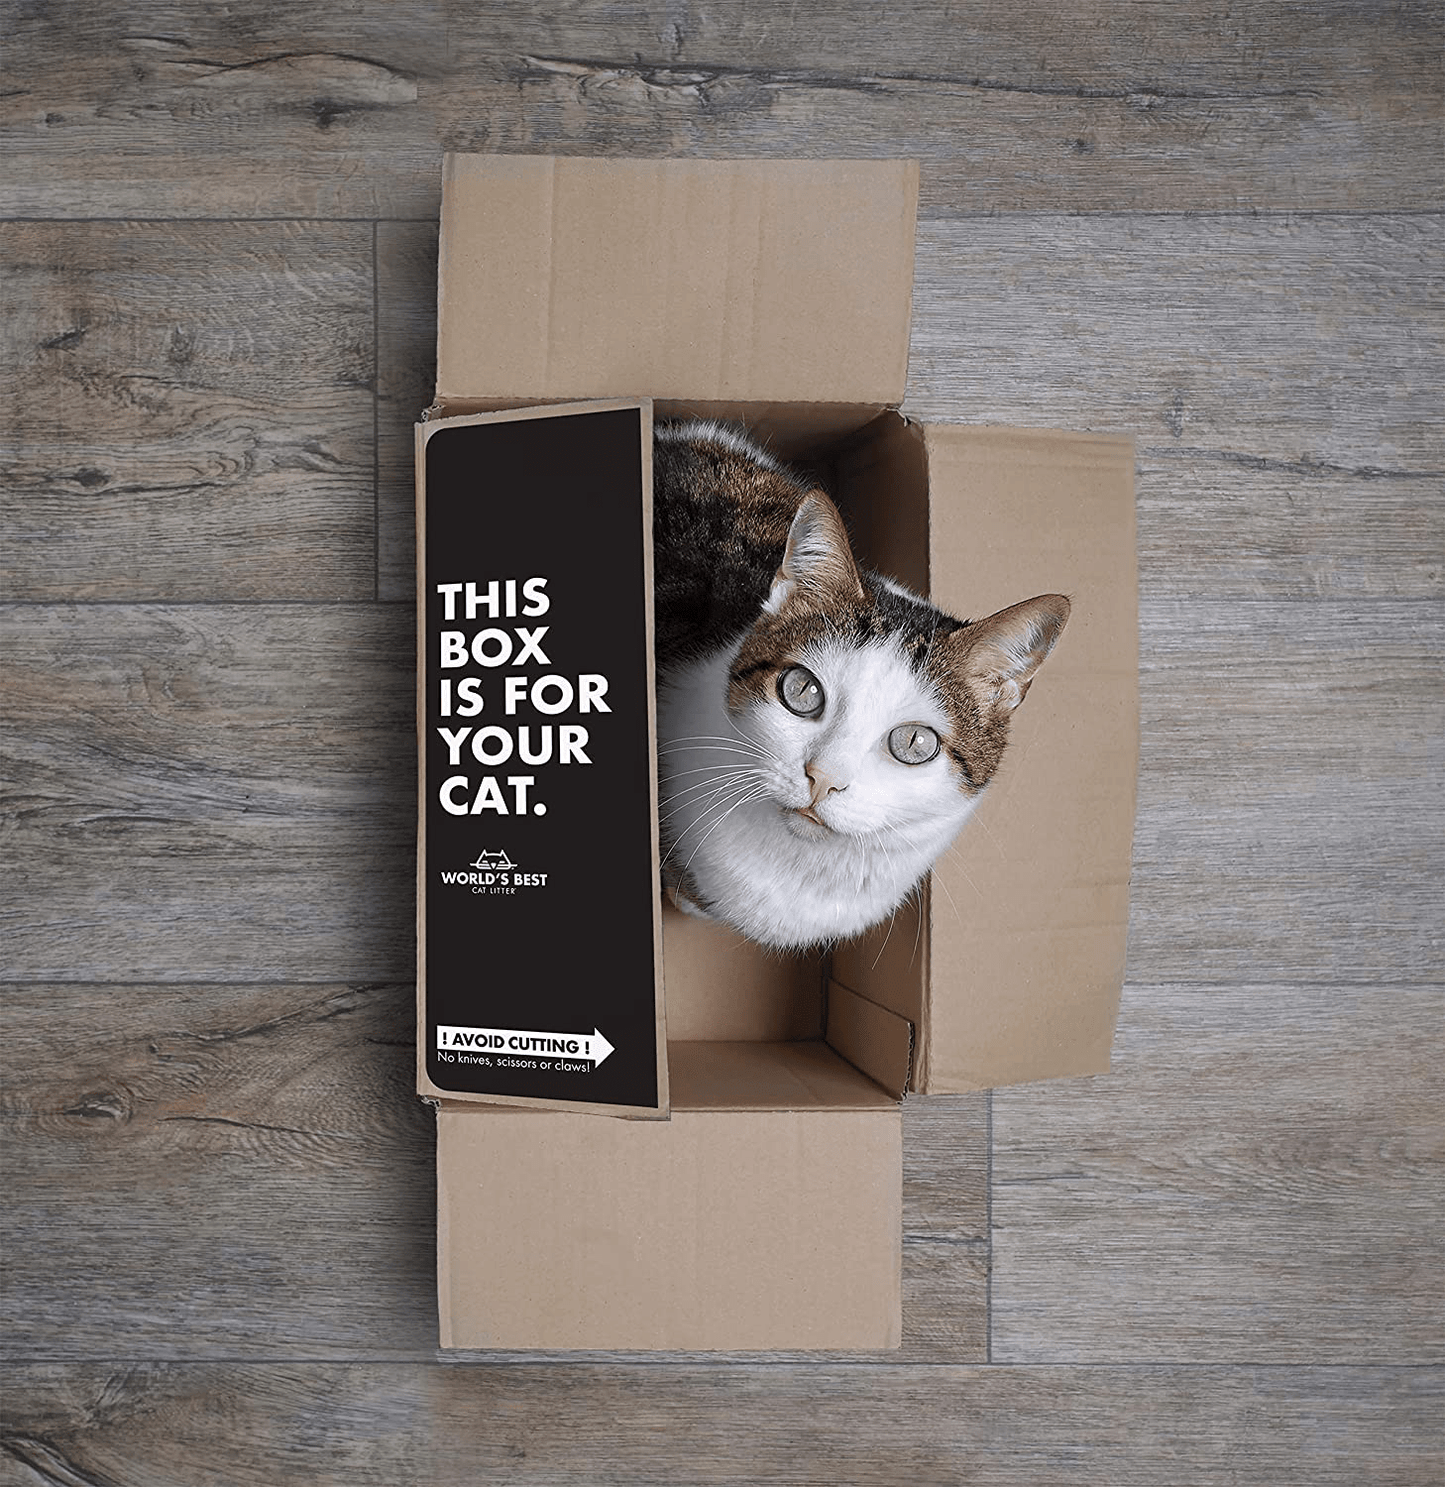 WORLD'S BEST CAT LITTER Original Unscented, 32-Pounds